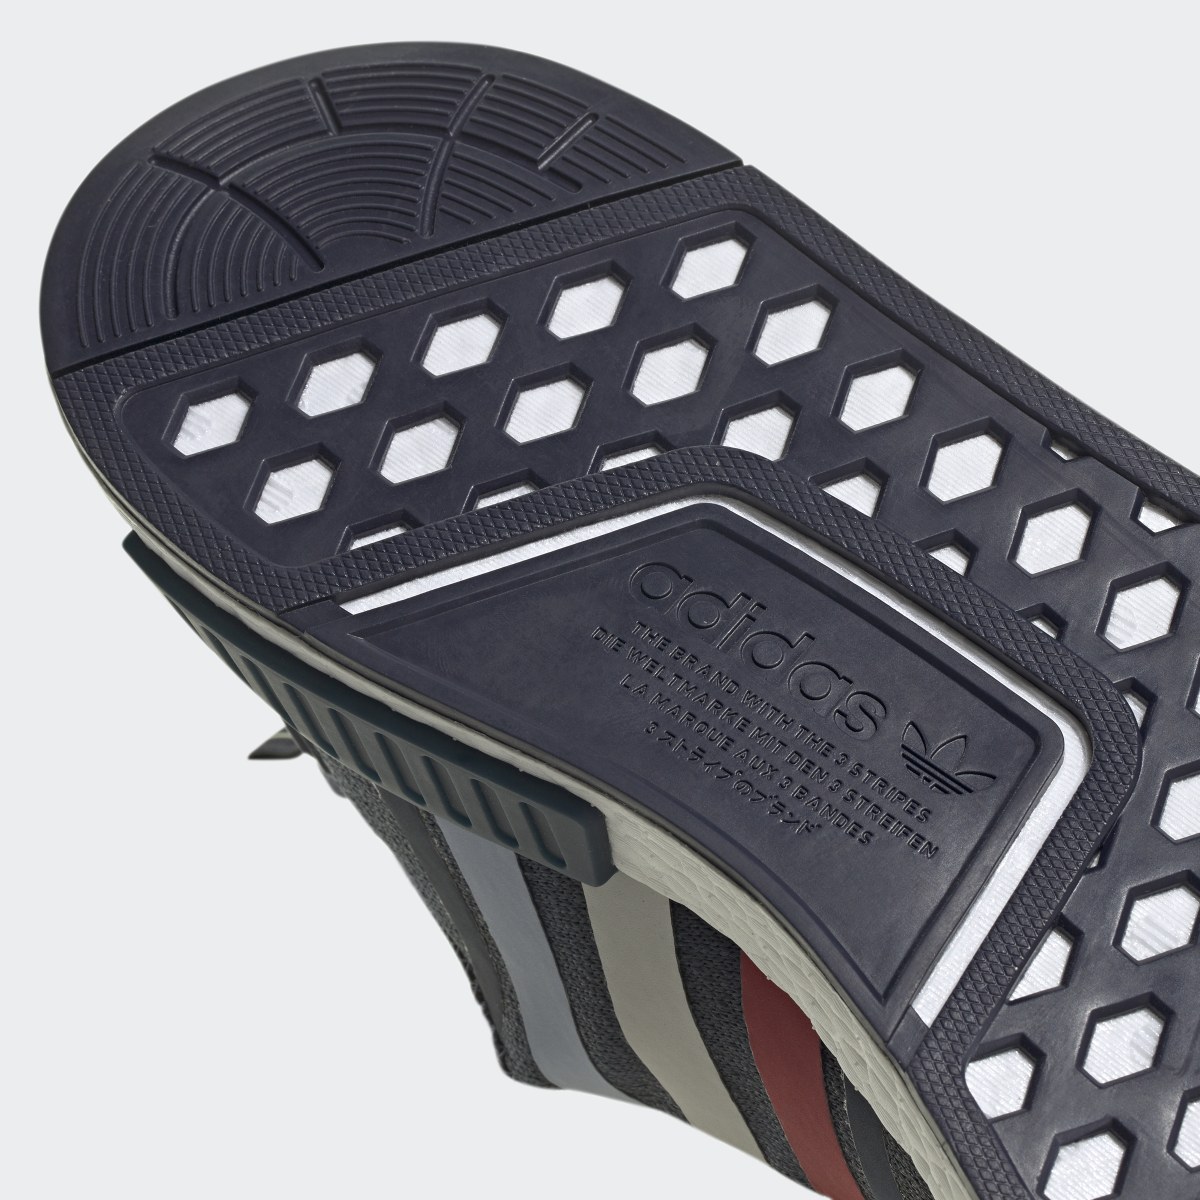 Adidas Scarpe NMD_R1. 4